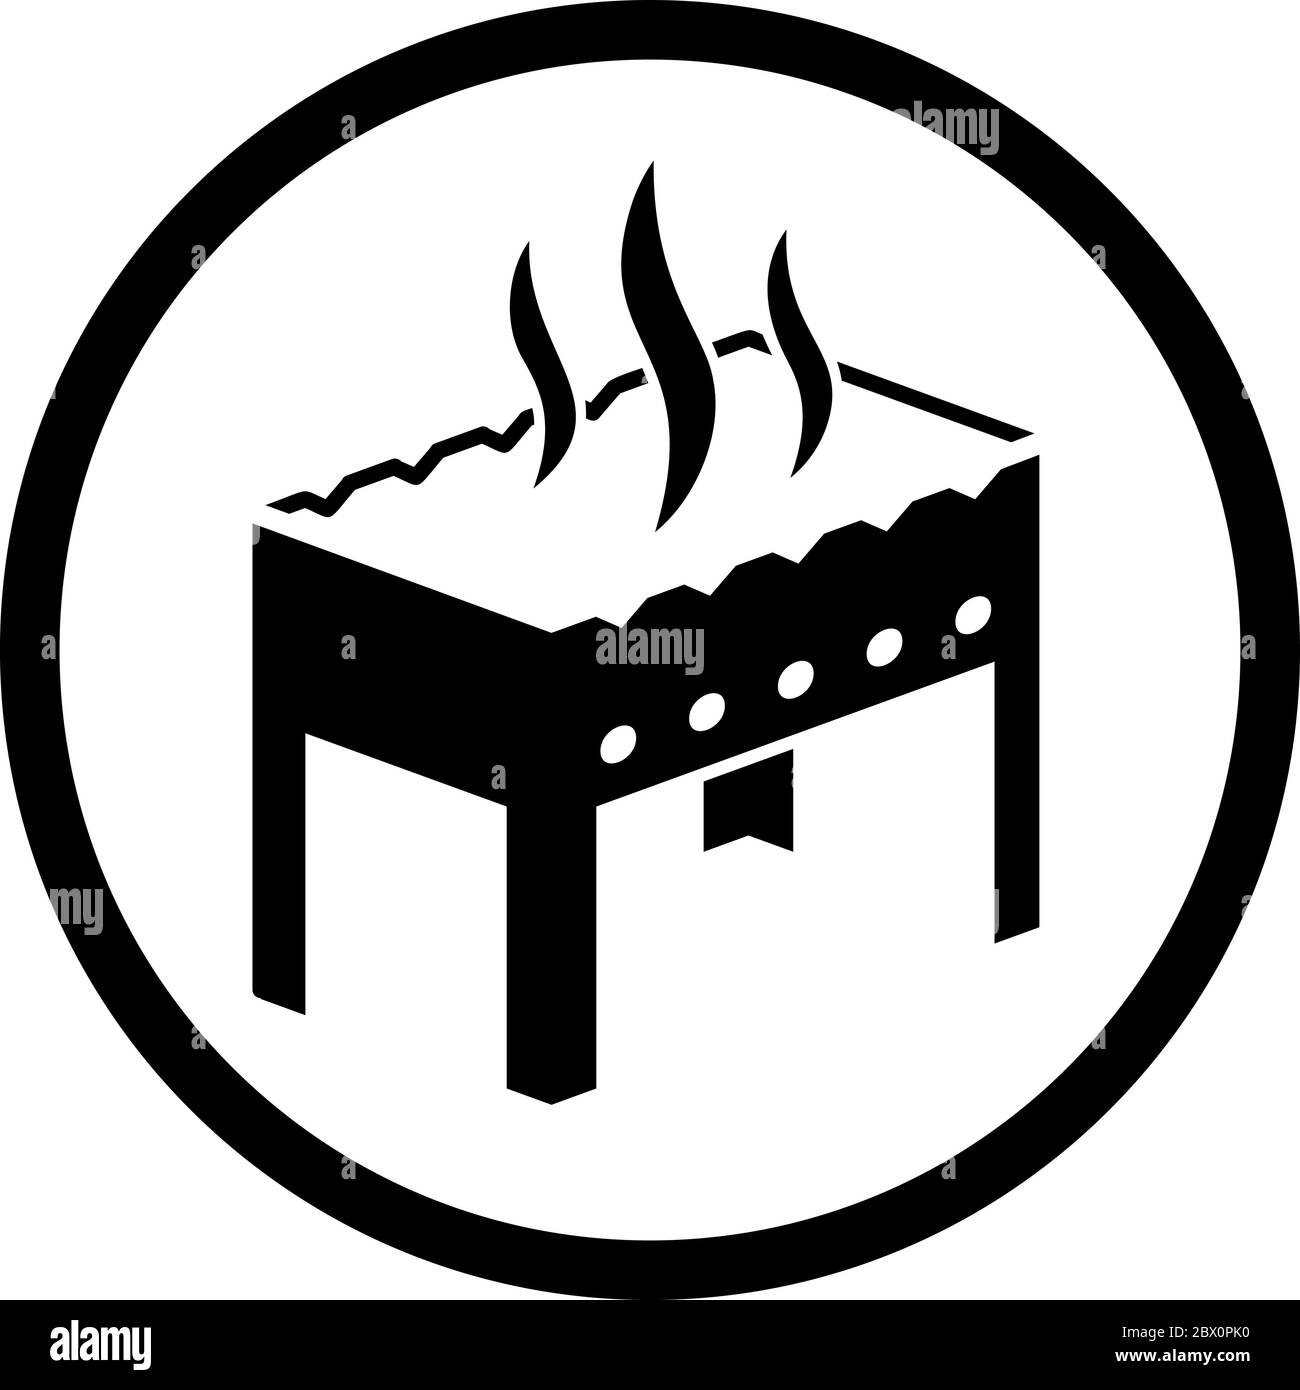 Icona Vector Grill o hot chargrill con logo Fire Portable bbq sagoma illustrazione isolato su sfondo bianco perfetto per l'uso con logo design an Illustrazione Vettoriale